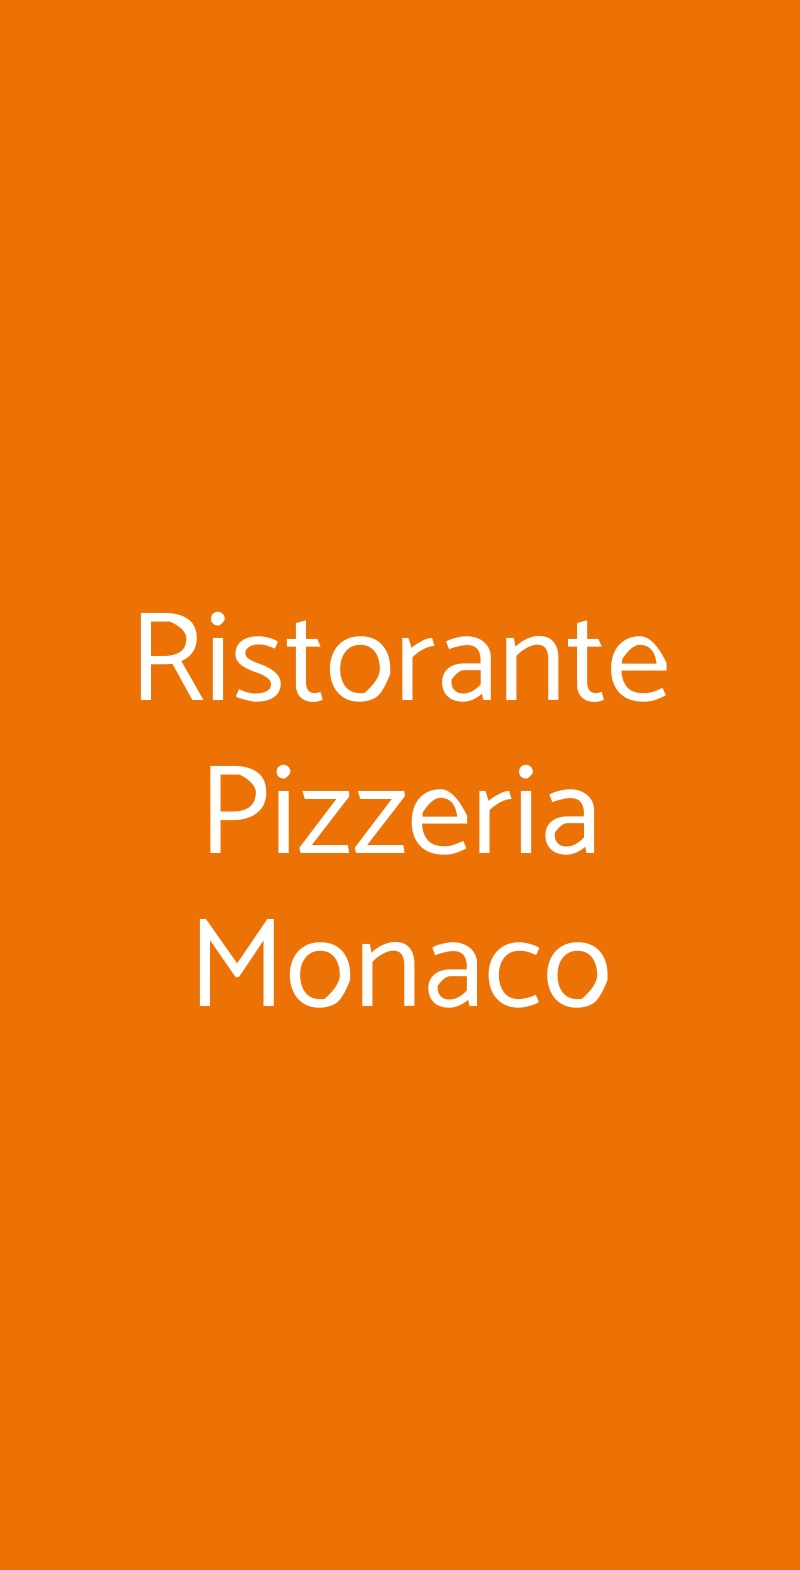 Ristorante Pizzeria Monaco Cavallino-Treporti menù 1 pagina